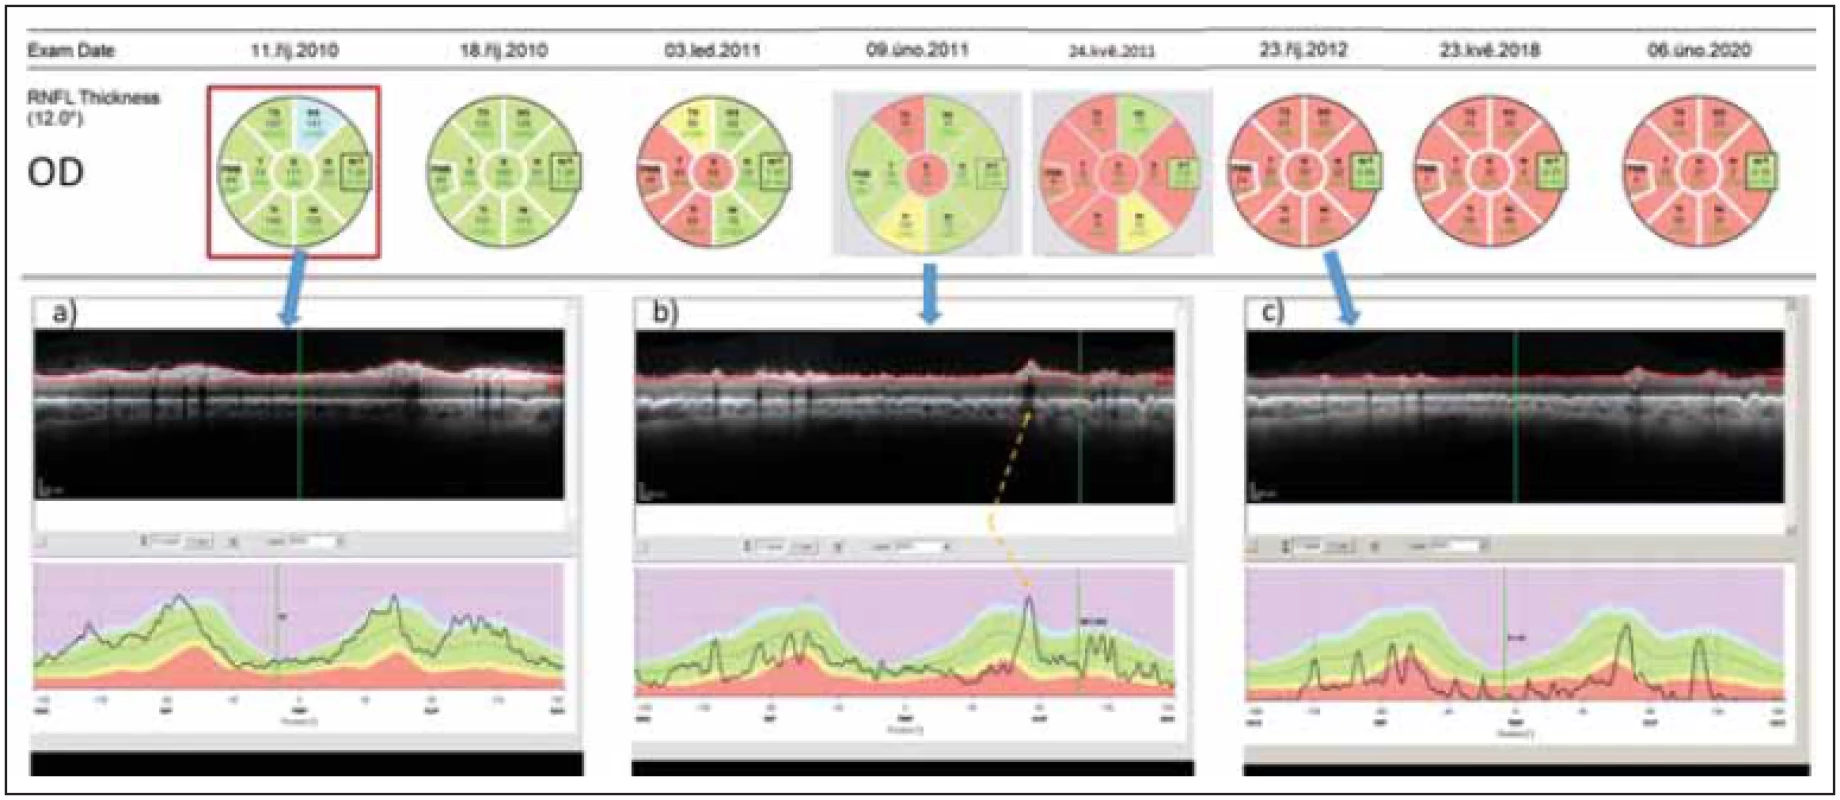 Longitudinální sledování tloušťky RNFL v peripapilární oblasti pravého oka pomocí optické koherenční tomografi e u pacientky
s AQP4-IgGpozNMOSD. V průběhu sledování proběhly dvě epizody zánětu očního nervu – na počátku října 2010 a v únoru 2011.
(a) ukazuje nález v akutní fázi zánětu.
(b) ukazuje nález po 4 měsících. Tloušťka RNFL v jednotlivých segmentech je sice ve většině segmentů v mezích normy (kódována zeleně),
avšak křivka RNFL na grafu dole je jasně oploštělá a vykazuje pokles ve všech segmentech. Na mírném zvýšení tloušťky RNFL
oproti předchozímu vyšetření se podílí edém při právě probíhající recidivě optické neuritidy ve vyšetřovaném oku. Místo, kde křivku
RNFL zvedá céva probíhající na povrchu sítnice, je označeno žlutou šipkou.
(c) ukazuje stav sítnice rok po počátku prvního zánětu. RNFL je natolik ztenčeno, že je na několika místech prakticky neměřitelné.<br>
Fig. 2. Longitudinal follow up of peripapillary RNFL thickness (right eye) in a patient with AQP4-IgGposNMOSD. Two episodes of optic
neuritis occurred during the follow-up – in October 2010 and in February 2011.
(a) shows fi nding in the acute phase of optic neuritis.
(b) shows fi ndings 4 months later. The thickness of RNFL still falls within normal values in most peripapillary segments (coded in
green) however, the curve of RNFL thickness has been fl attened and shows a loss of RNFL in all segments. A slight increase in RNFL
thickness on this day in comparison with the prior exam is caused by edema caused by the second optic neuritis in the right eye. The
blood vessels artifi cially increase the RNFL thickness (marked by a yellow arrow).
(c) shows retinal fi ndings a full year after the onset of fi rst optic neuritis in the eye. RNFL has been thinned and cannot be reliably
quantifi ed.